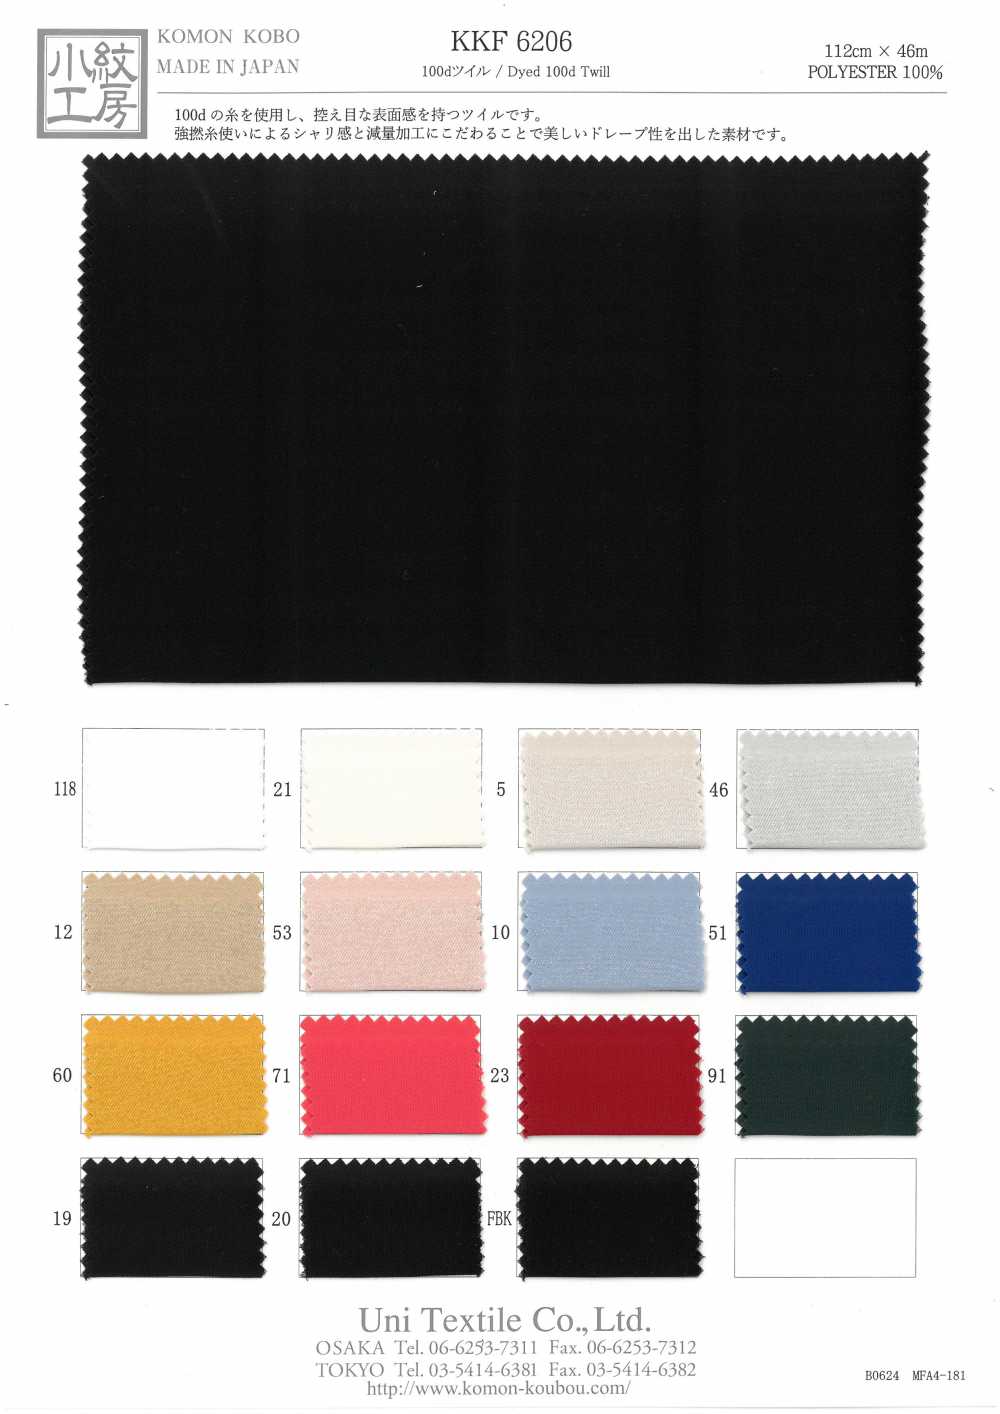 KKF6206 100d Köper[Textilgewebe] Uni Textile